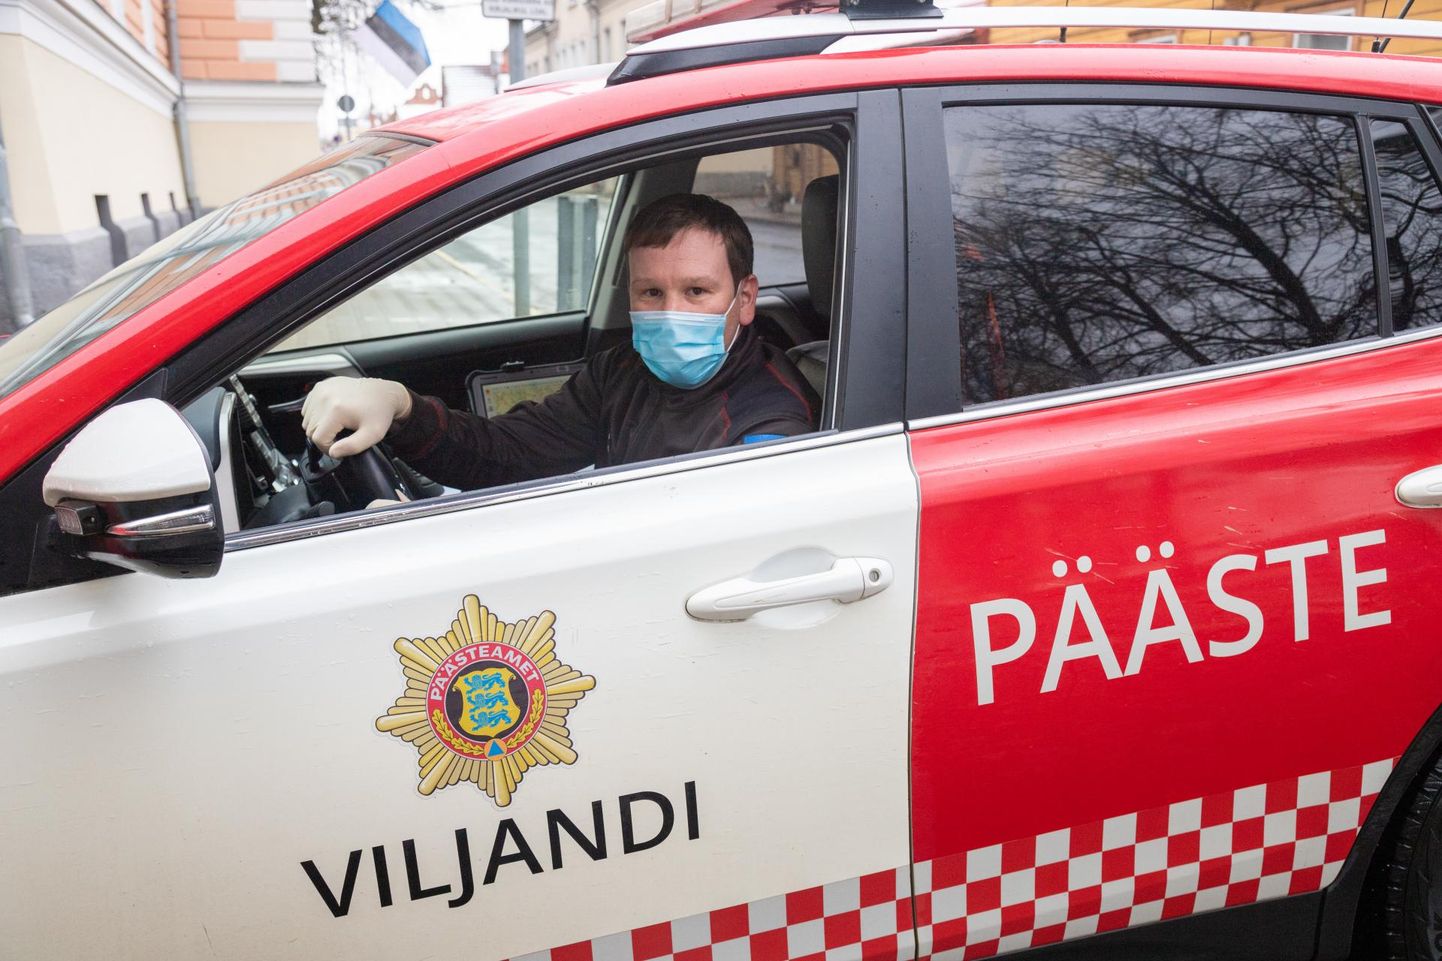 Päästeameti Viljandi operatiivkorrapidaja Rainis Liir tõdeb, et teisi aidates peab oskama kaitsta ka oma tervist.